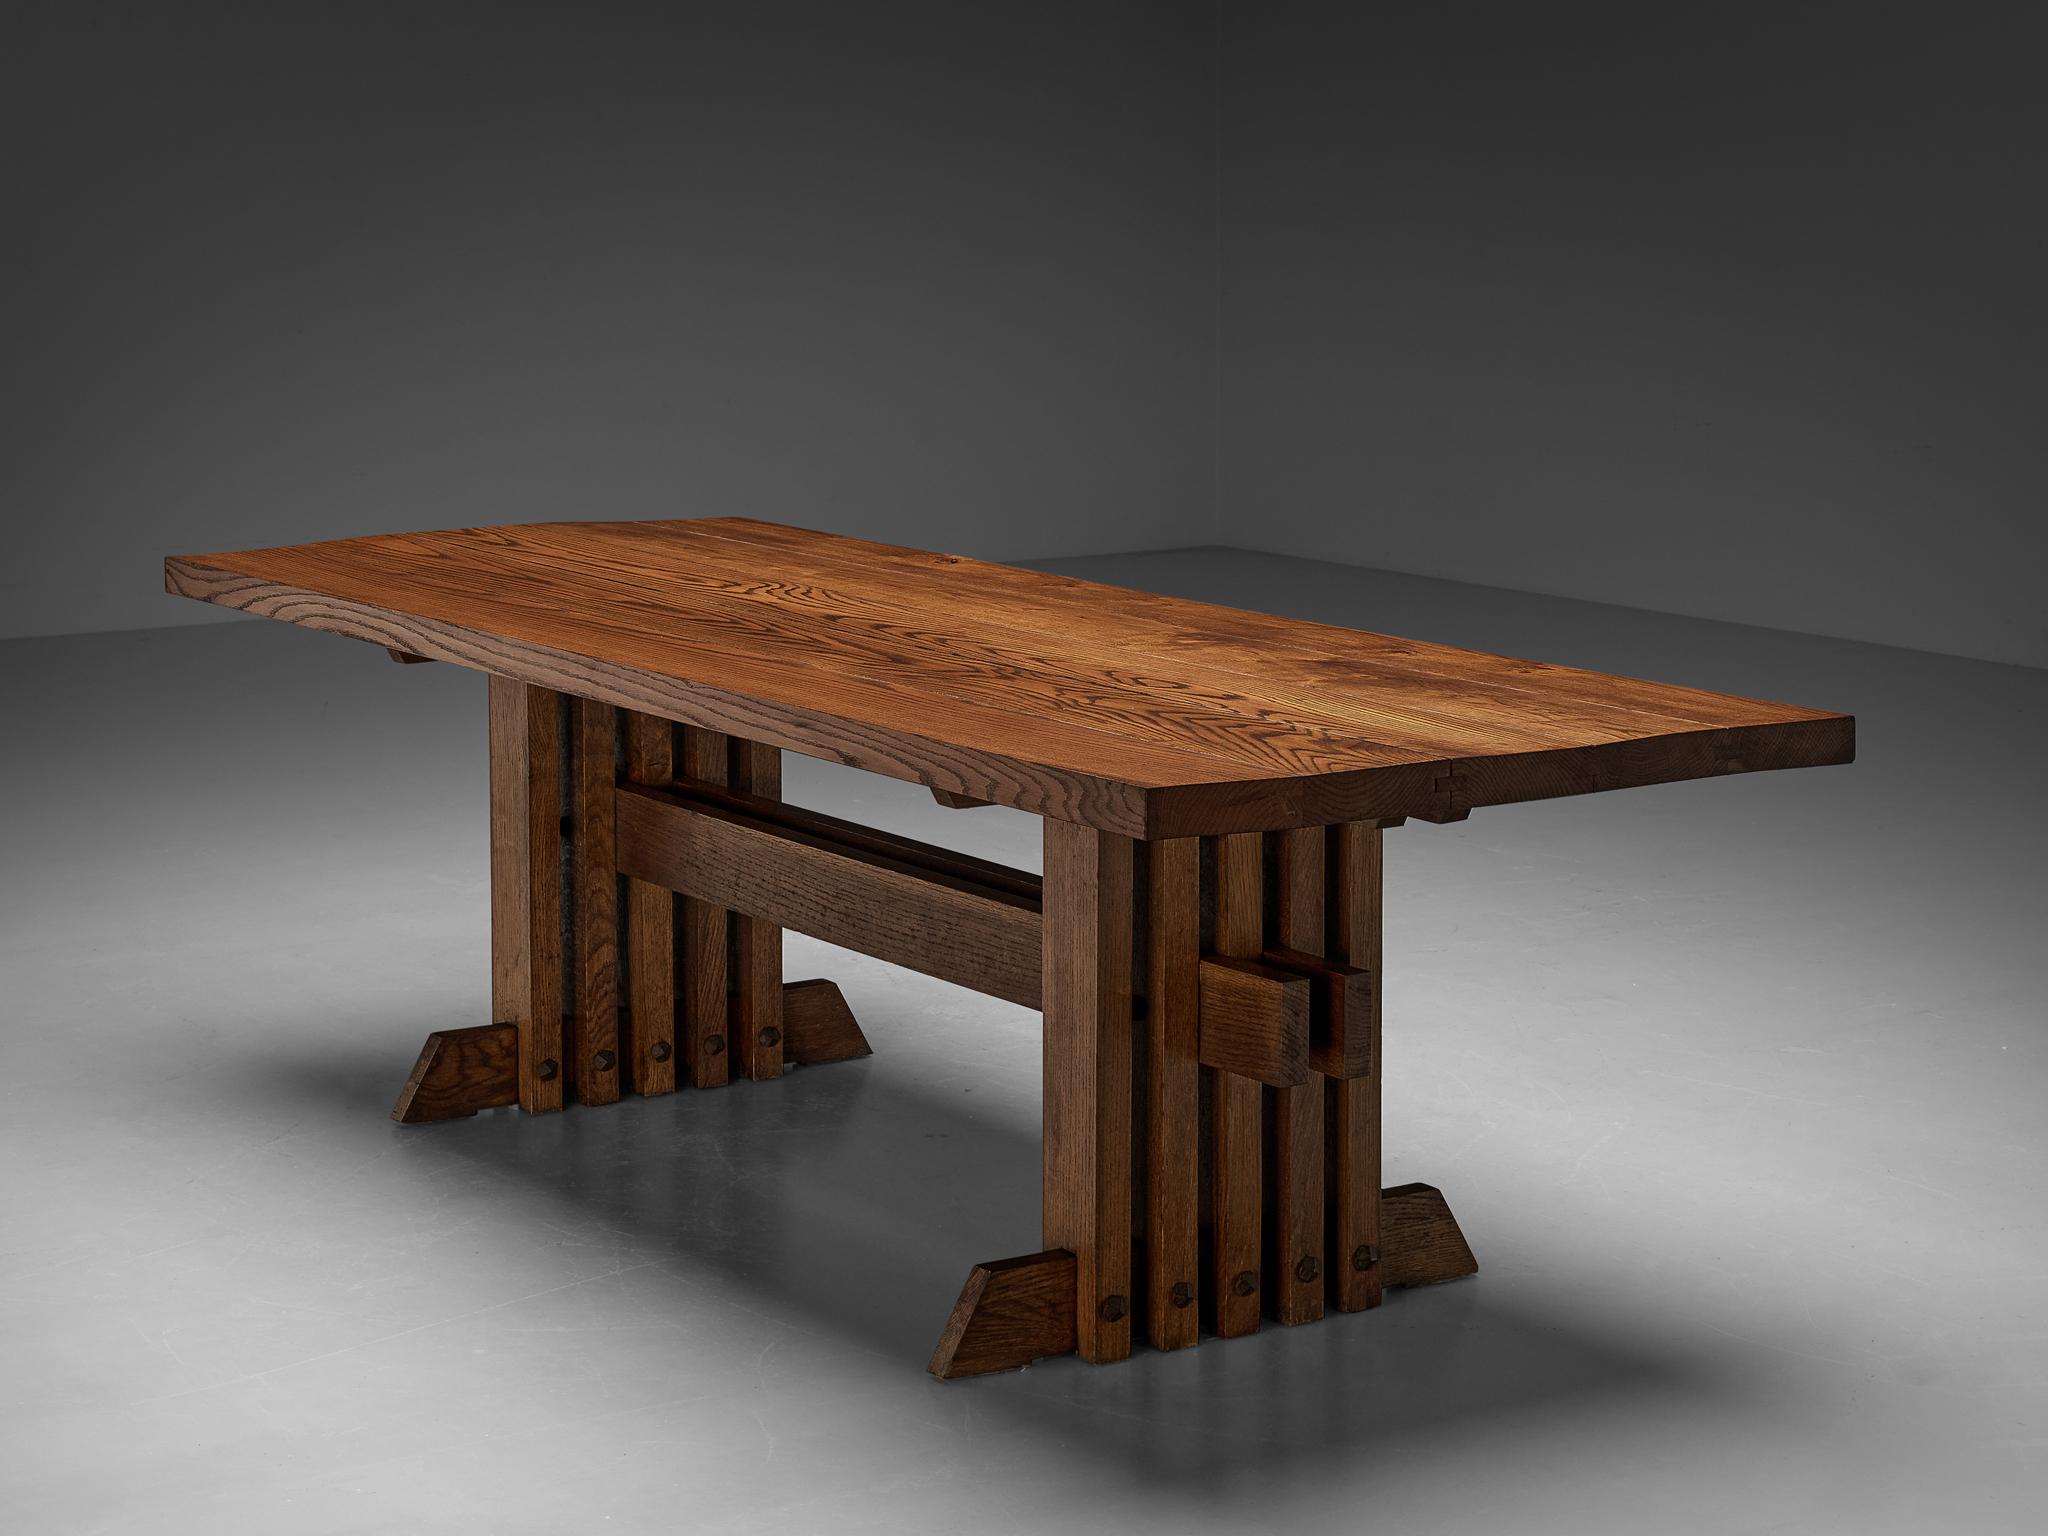 Jordi Vilanova I Bosch, table de salle à manger, chêne, fer, Espagne, années 1960.

Cette table est solide, architecturale et robuste. Des qualités de conception qui sont à la fois typiques du design espagnol du milieu du siècle et surtout des